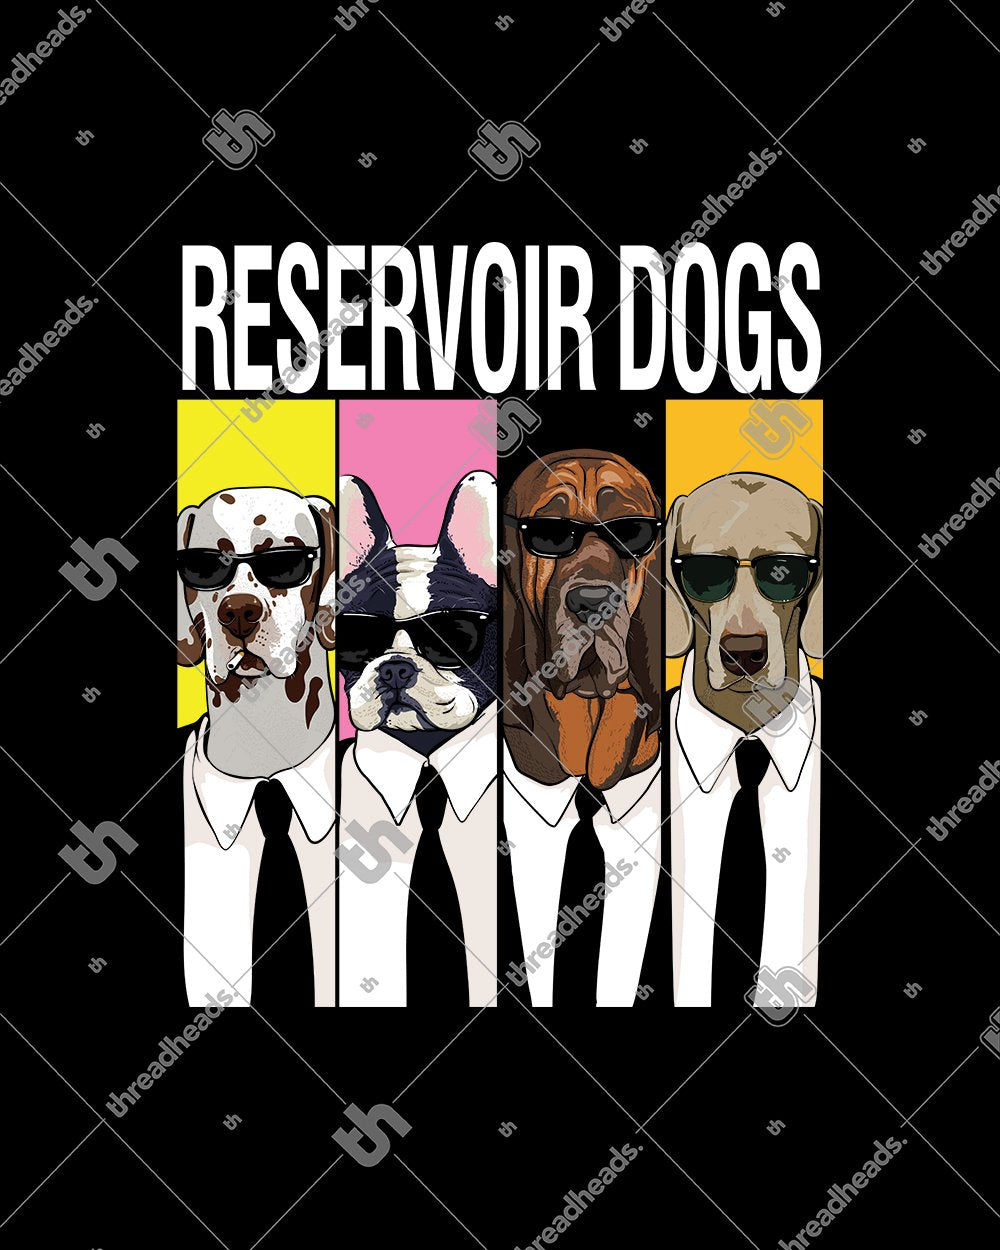 Reservoir Dogs T-Shirt Australia Online #colour_black